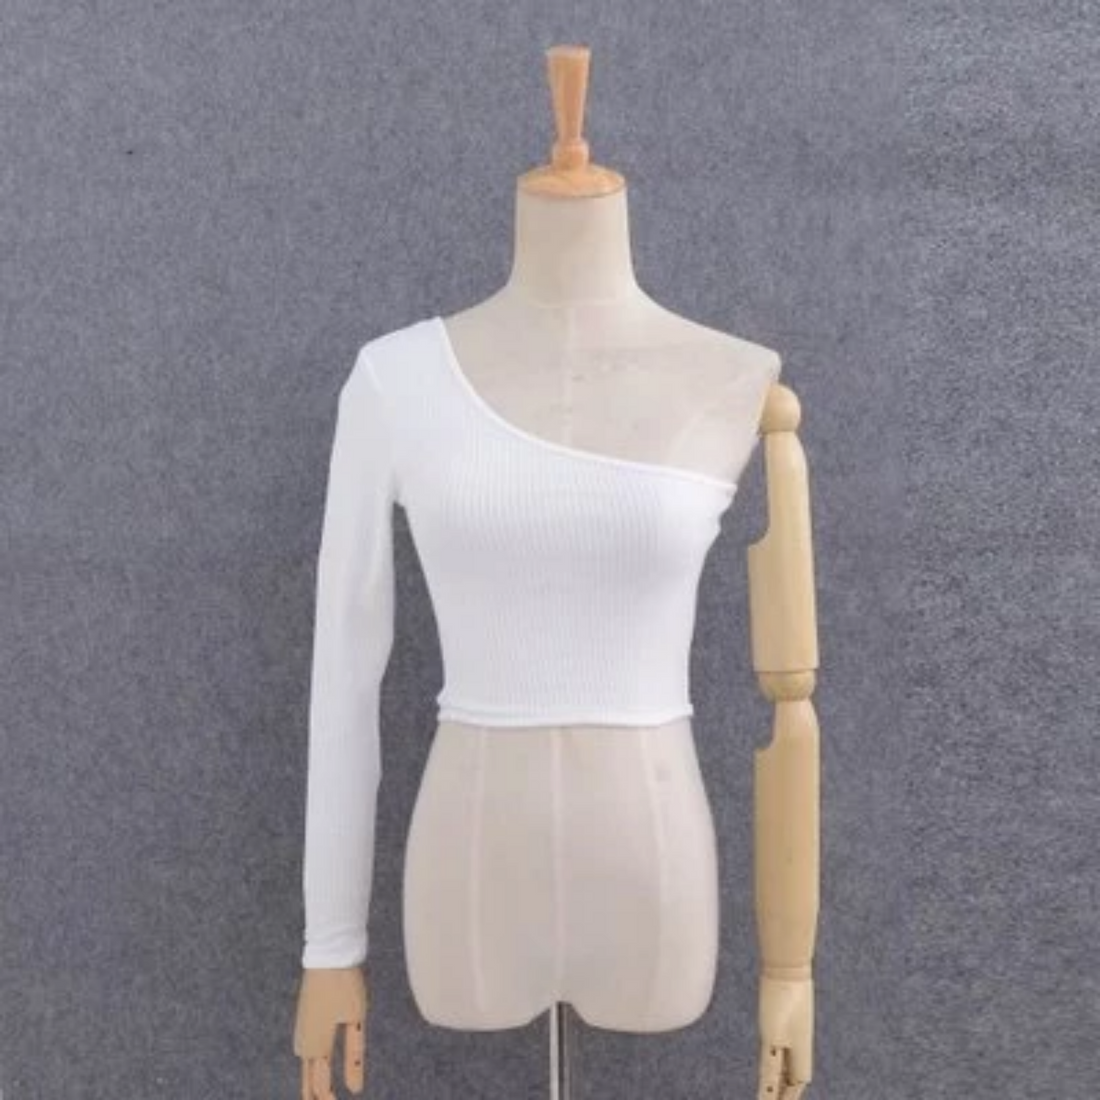 Women's Knitted Off-Shoulder Elastic Crop Top